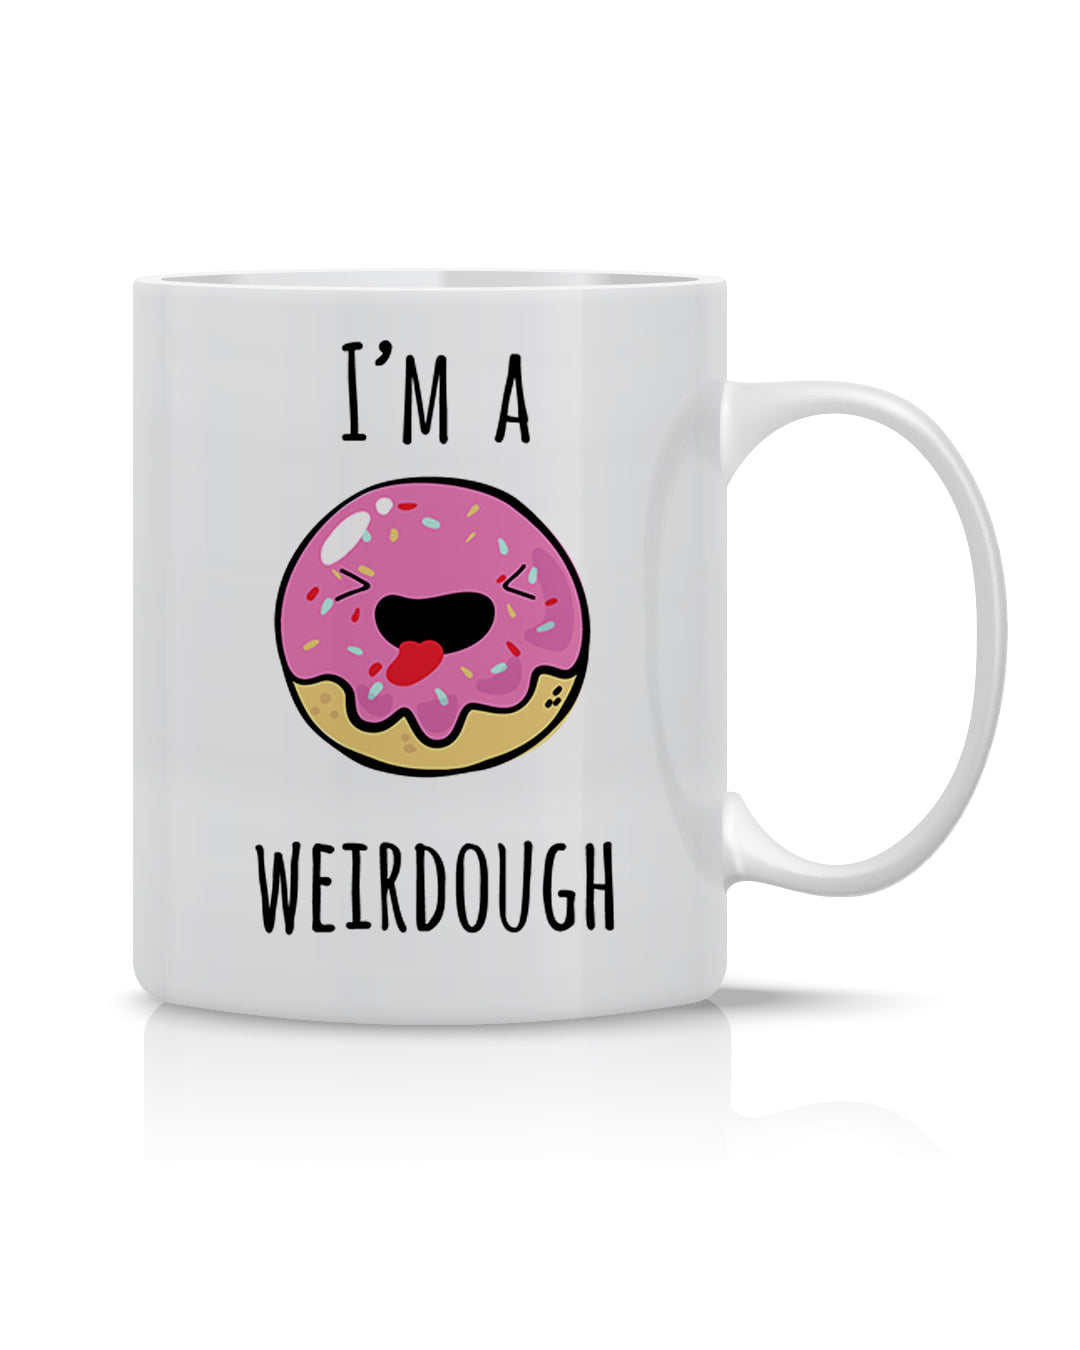 Weird-Dough Mug